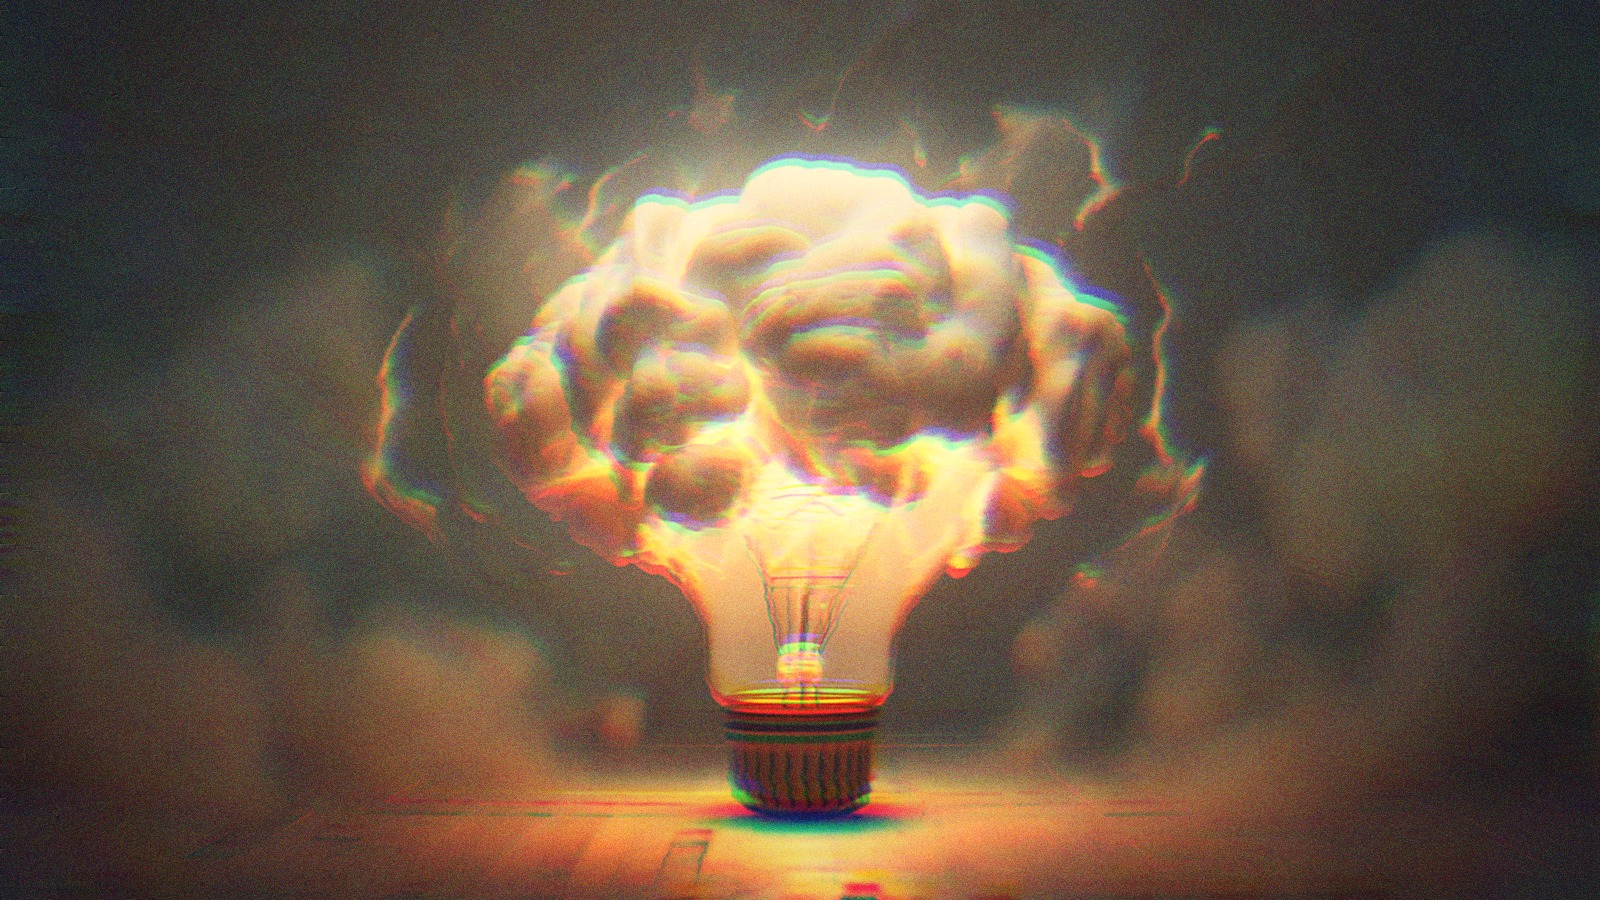 A lightbulb bursting to reveal a cloud.